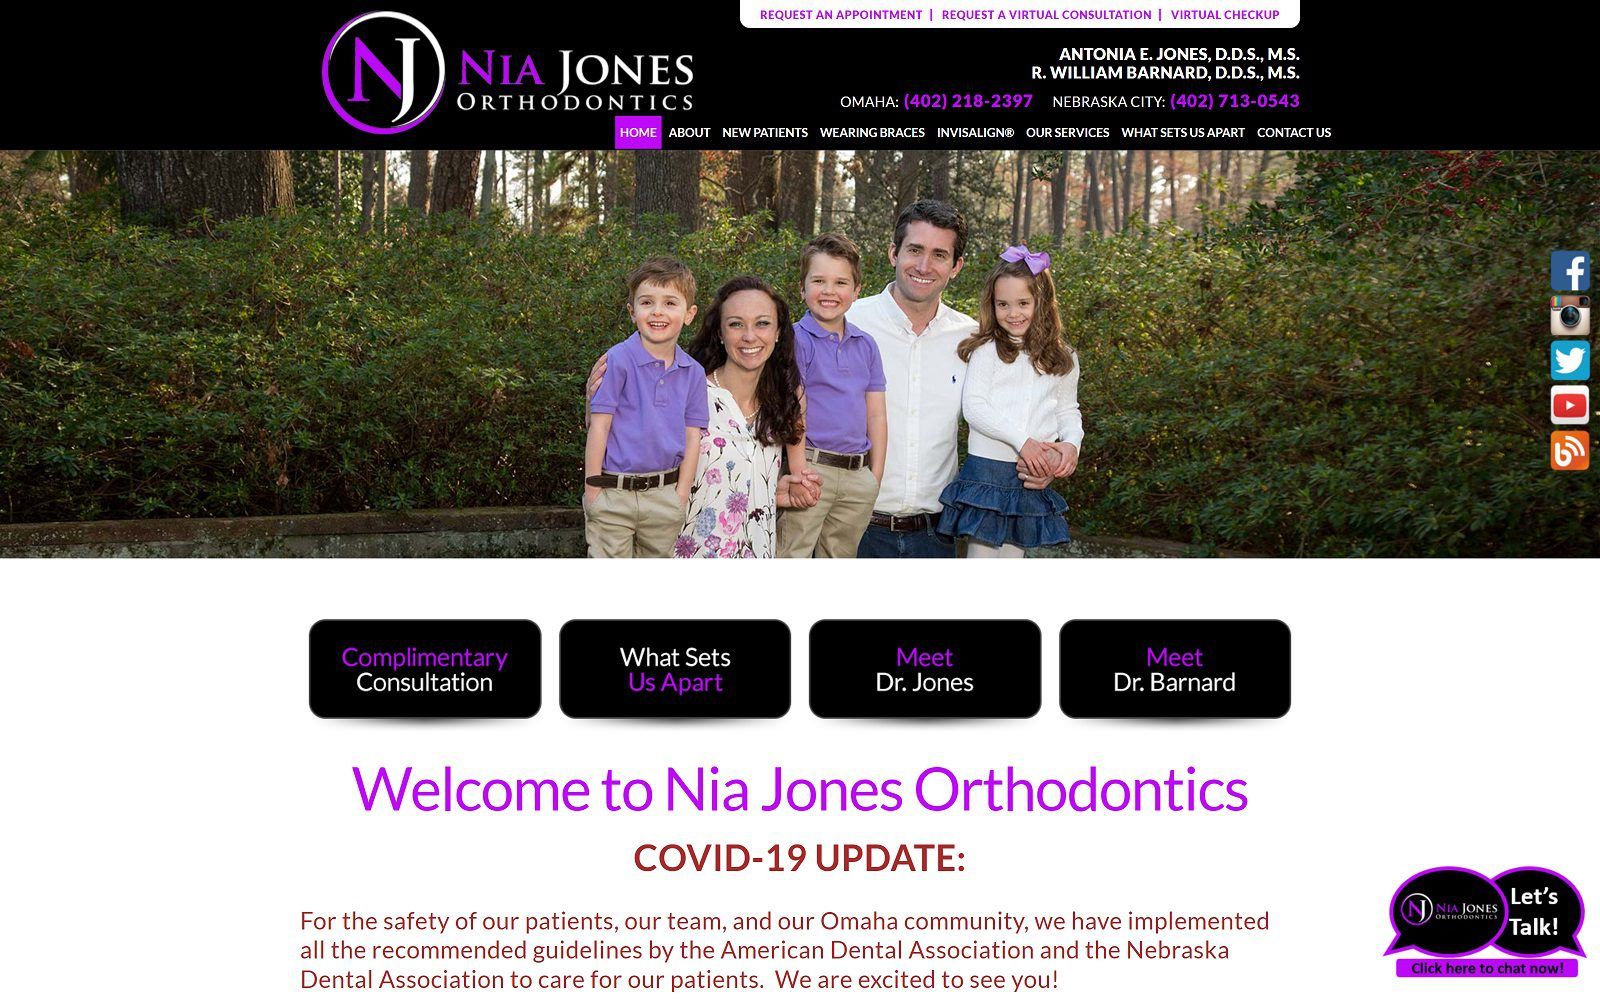 The screenshot of nia jones orthodontics website